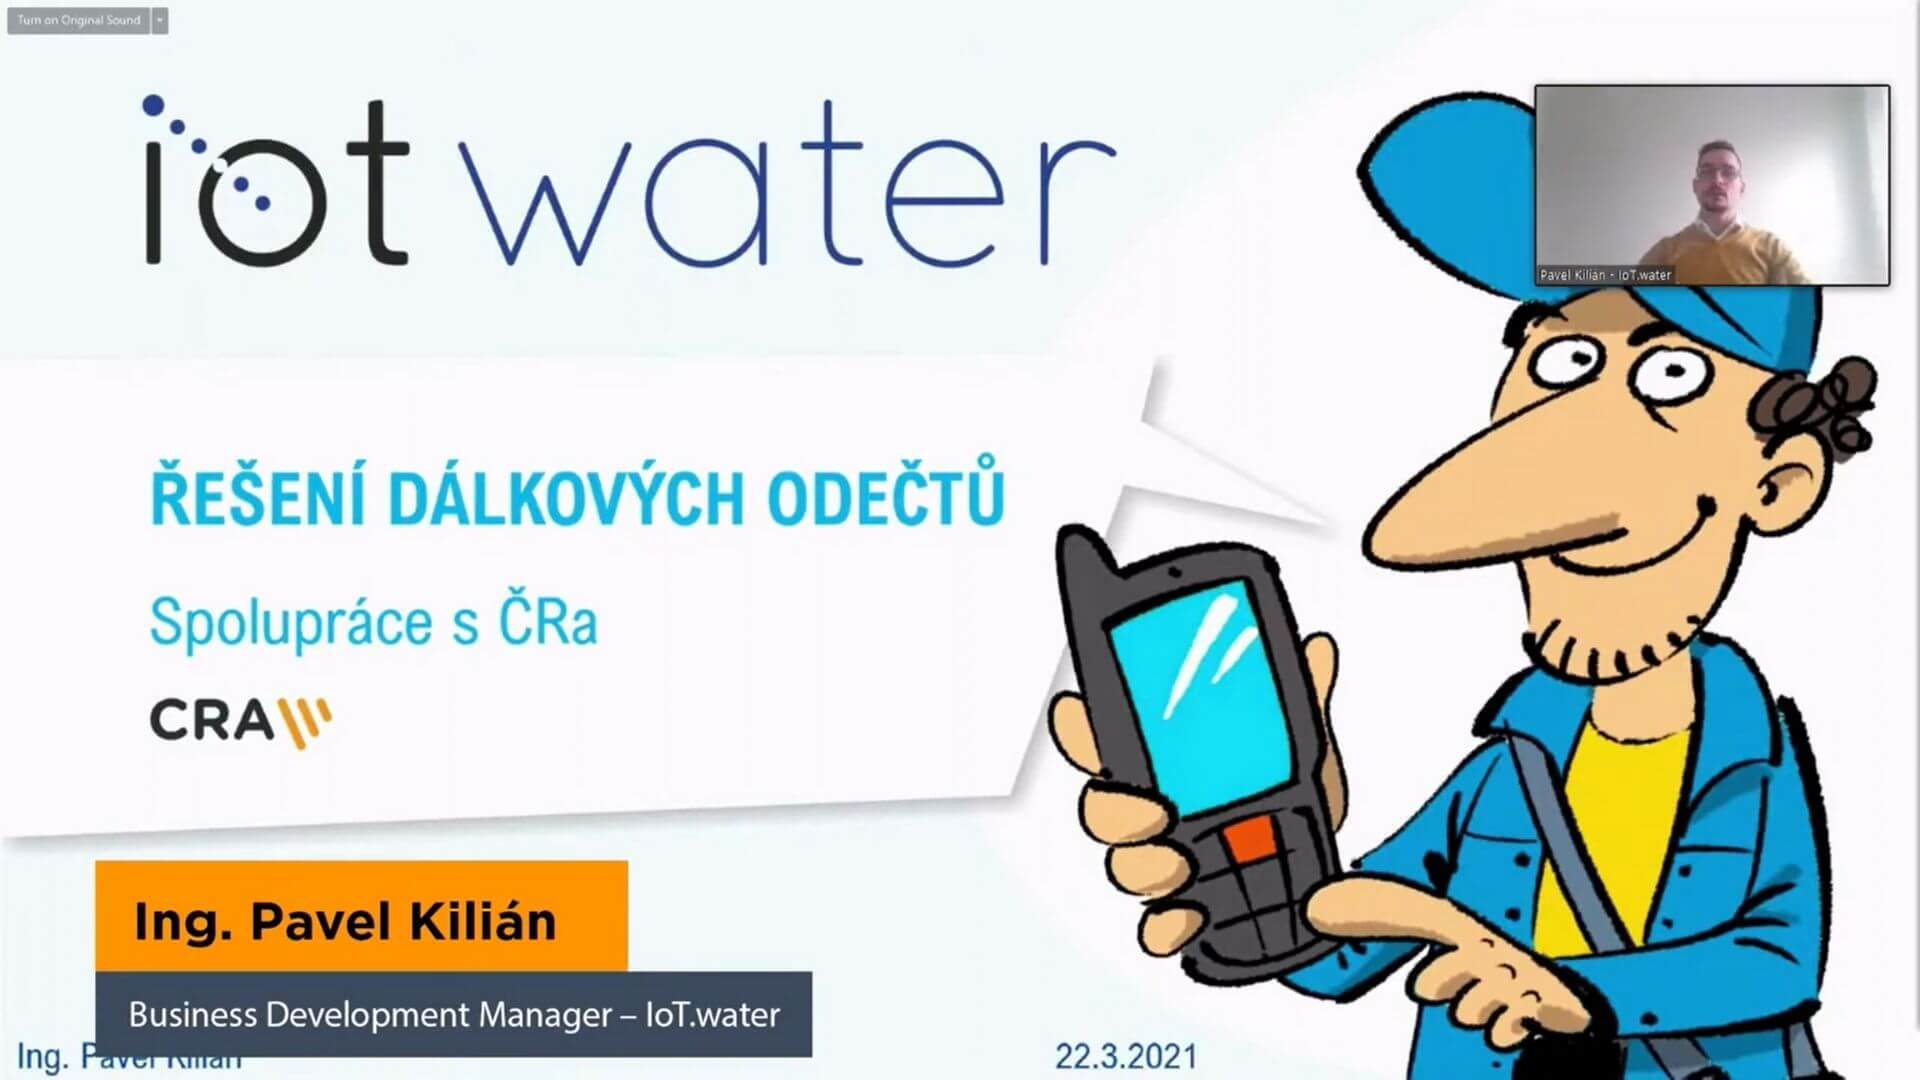 Pavel Kylián ze společnosti IoT.water s.r.o. totiž představoval projekt chytrých odečtů vody